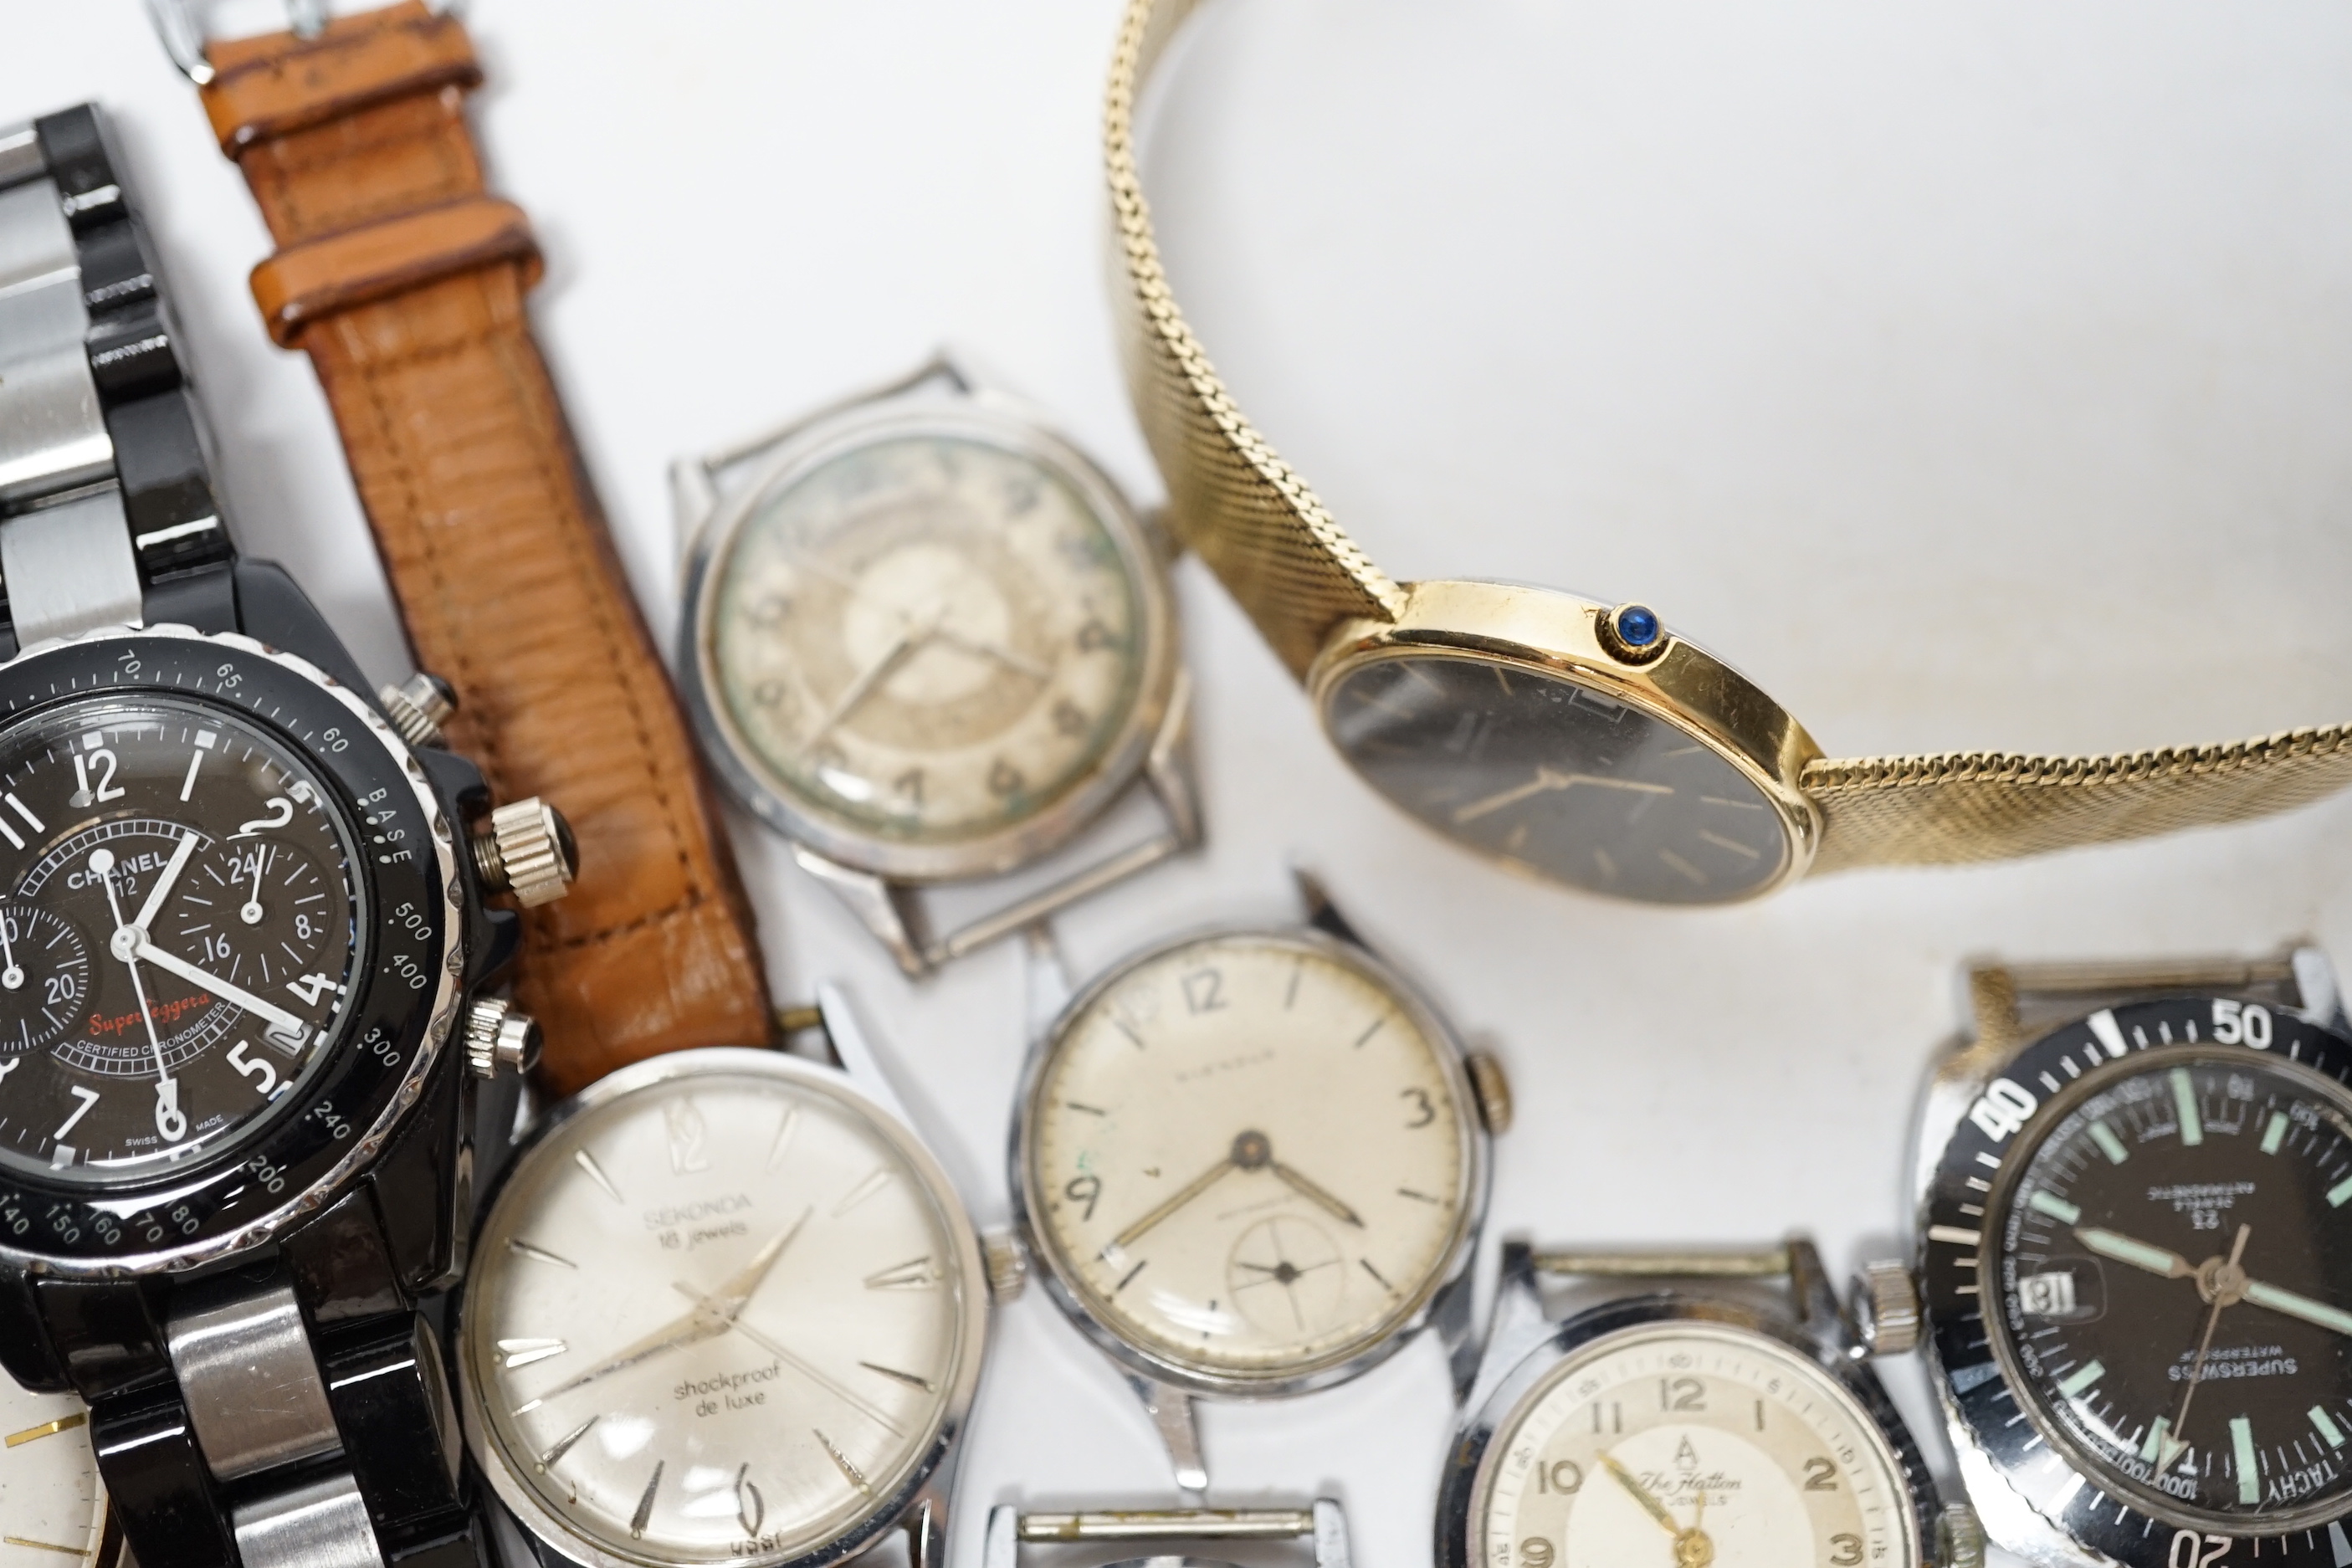 Assorted gentleman's watches including Certina and Sekonda.